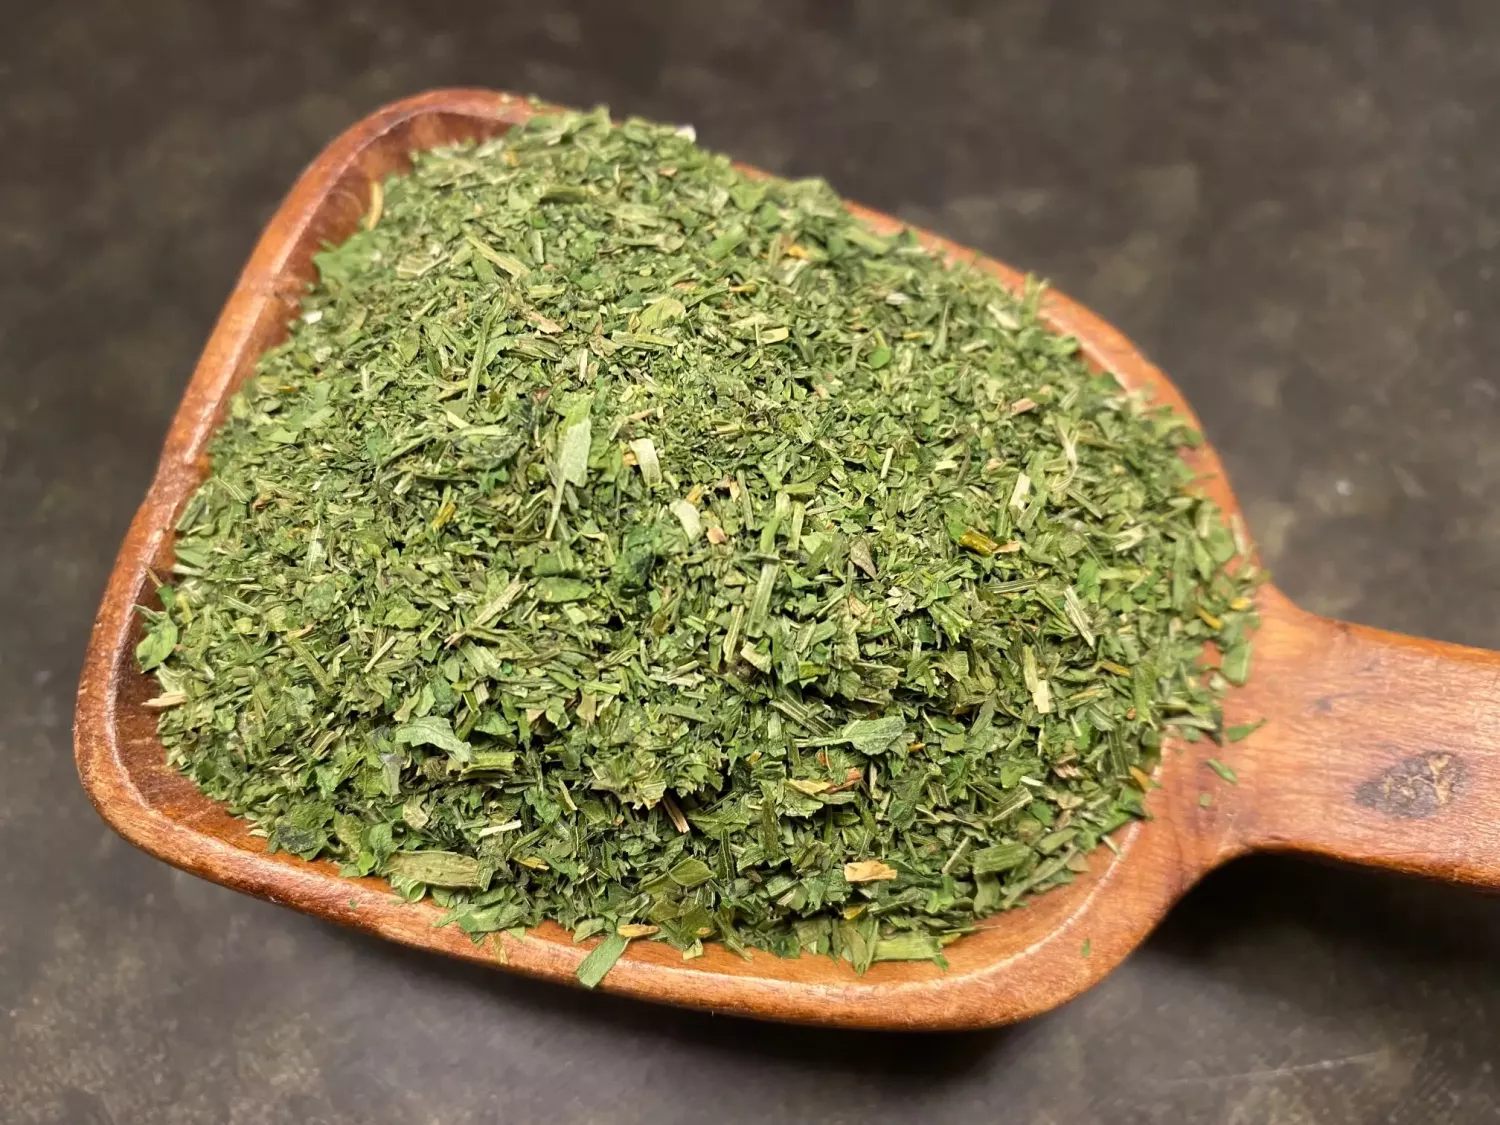 Fines Herbs  "De finaste örterna" (10 g)